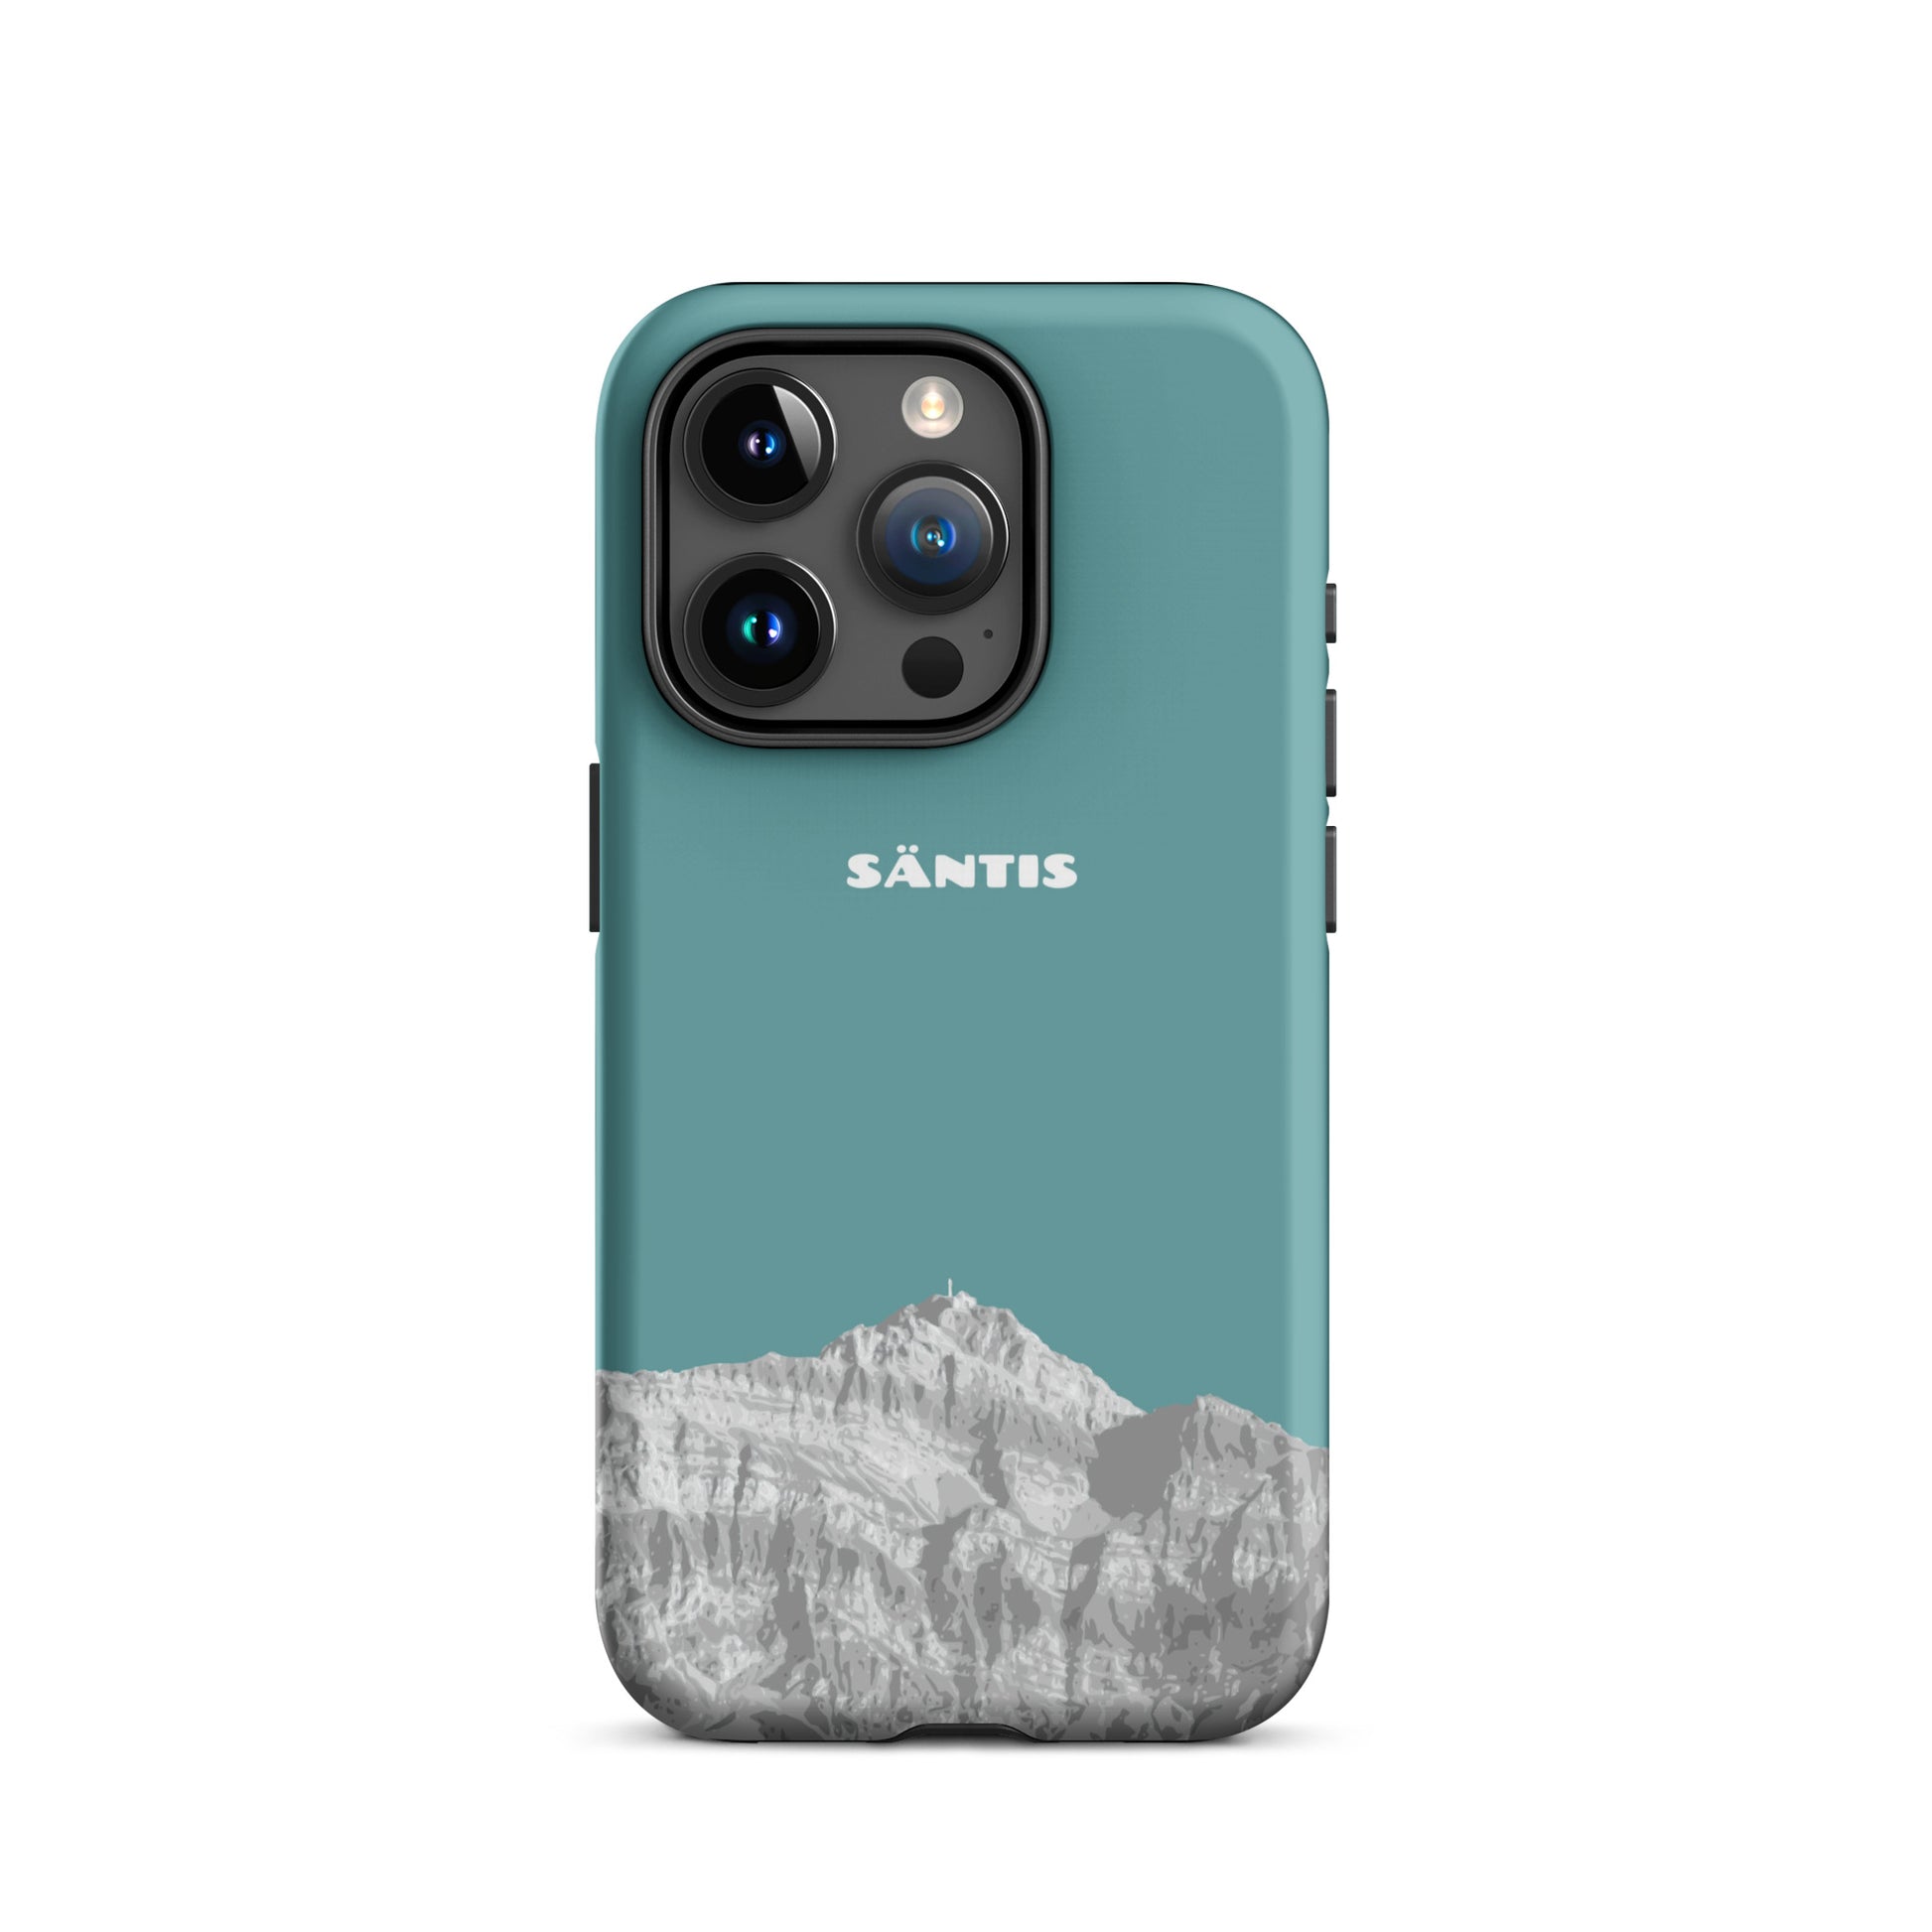 Hülle für das iPhone 15 Pro von Apple in der Farbe Kadettenblau, dass den Säntis im Alpstein zeigt.